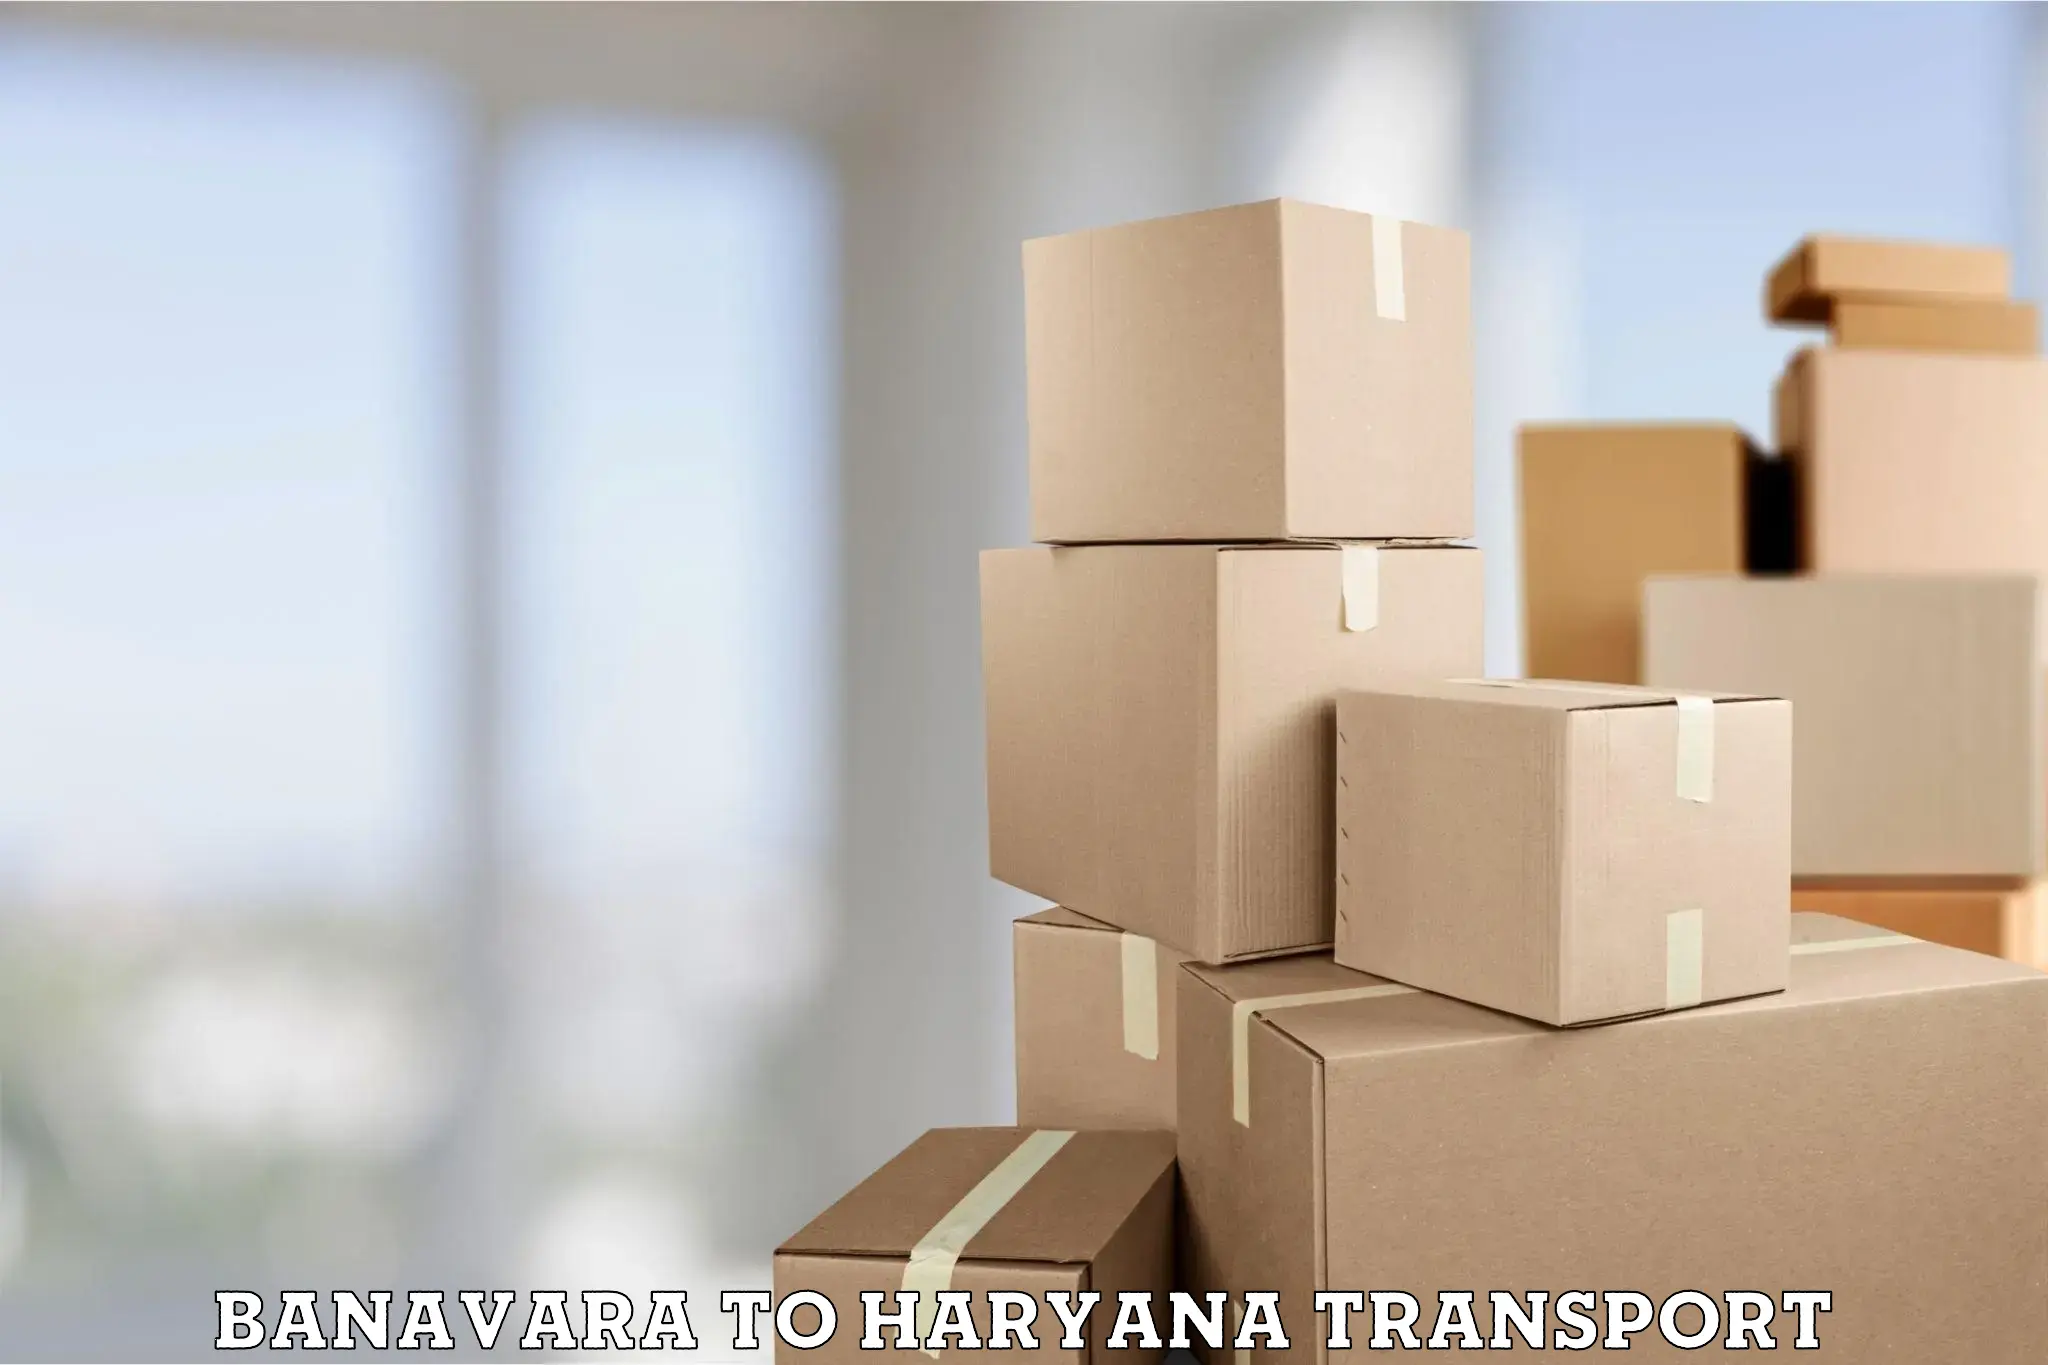 Vehicle transport services Banavara to Chirya